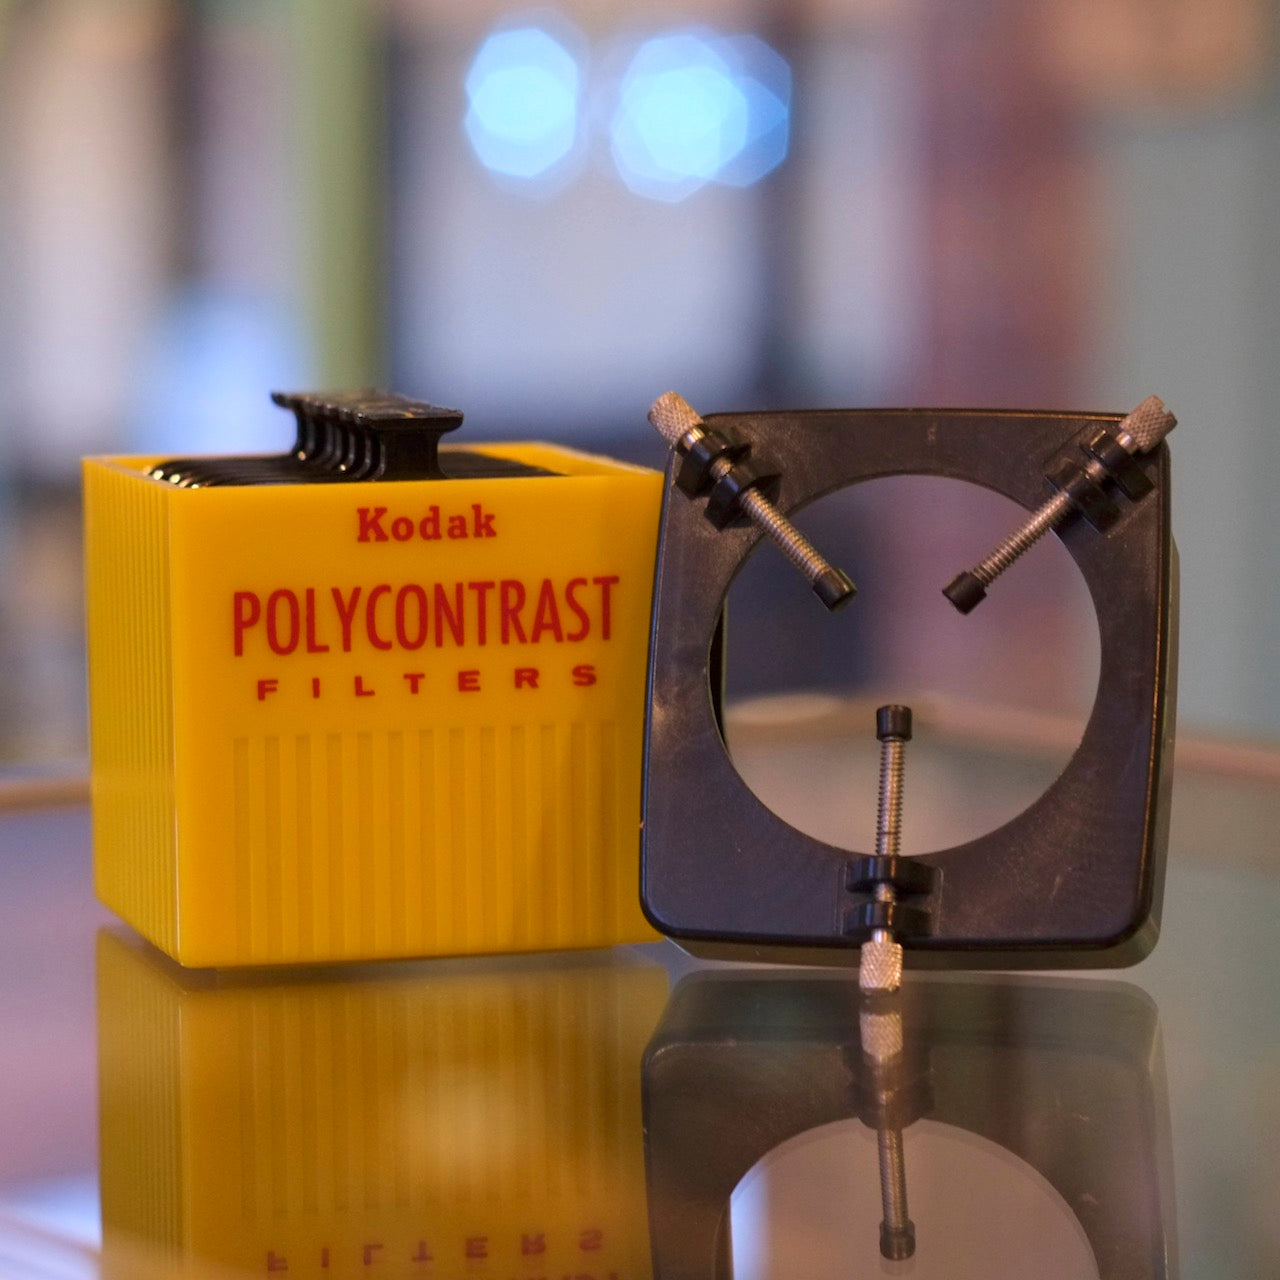 Kodak Polycontrast Filter Kit with Holder